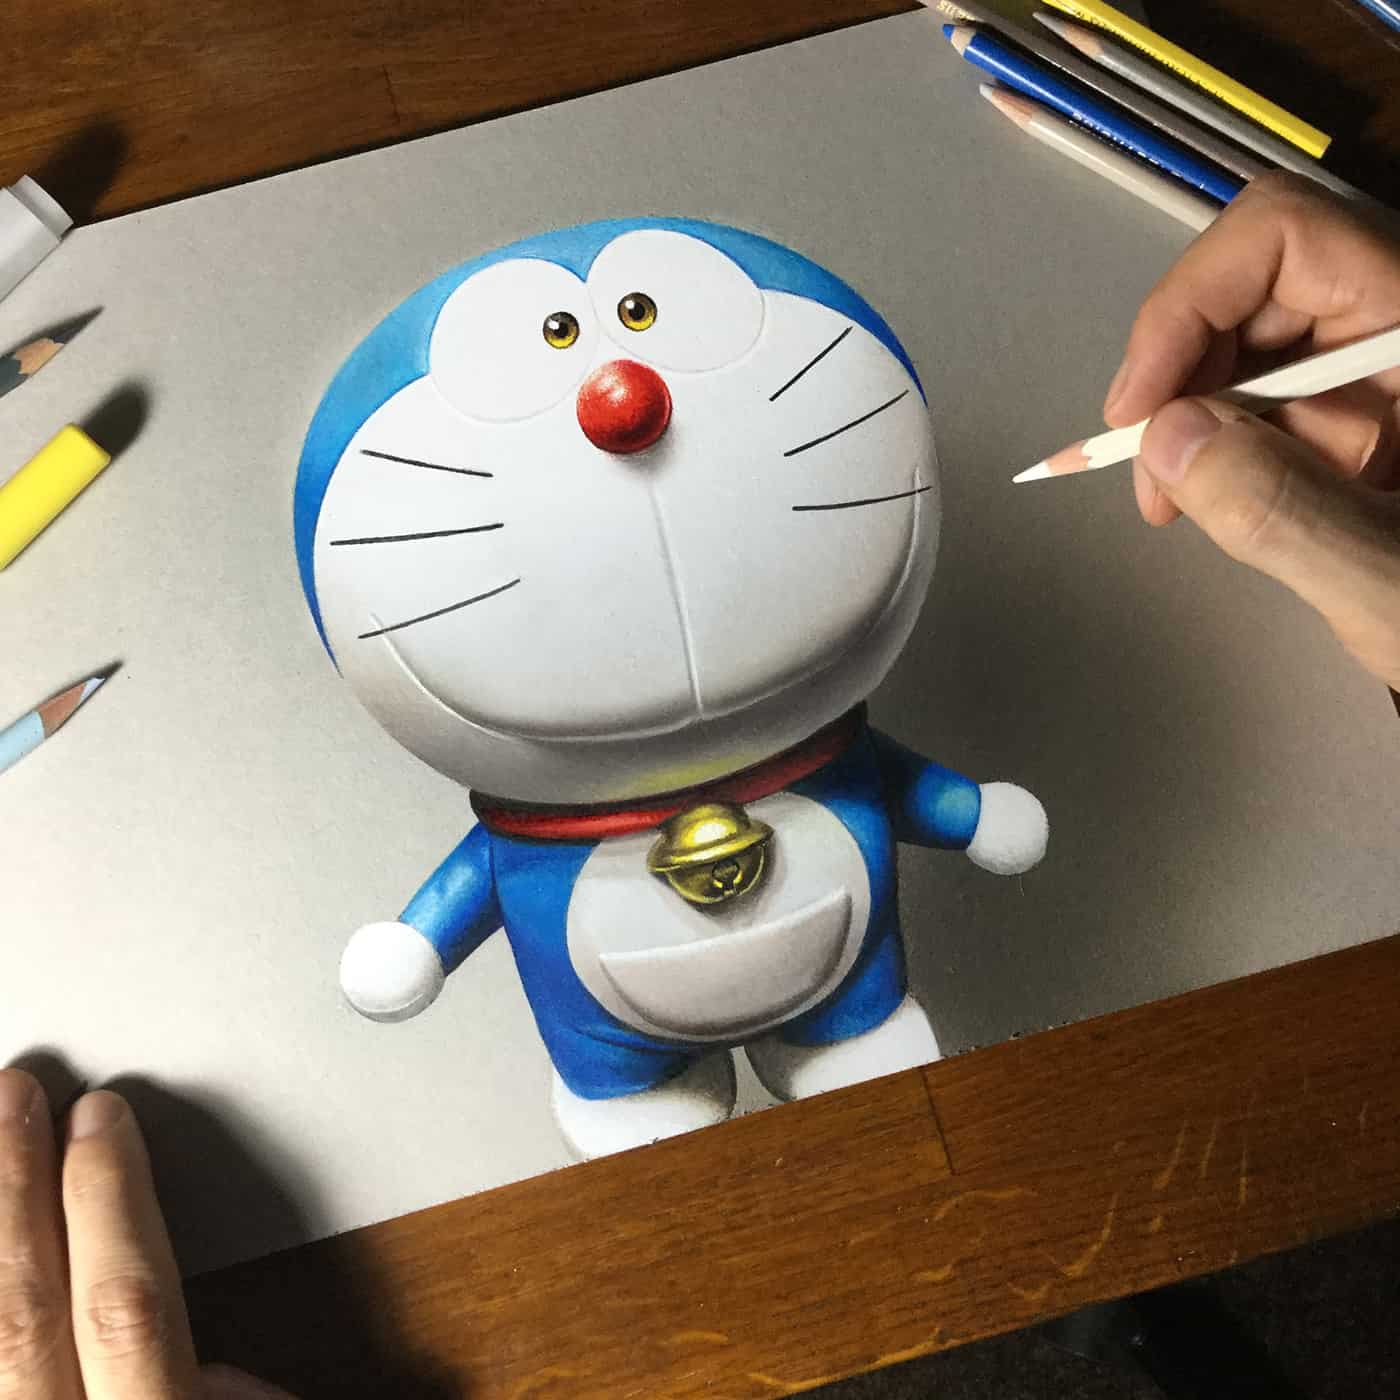 Doraemon là một nhân vật cực kỳ yêu thích của nhiều bạn nhỏ trên thế giới. Bạn cũng muốn cùng thử sức với hình vẽ Doraemon cute và đơn giản của mình? Hãy xem ngay bức ảnh liên quan và theo dõi các bước chi tiết để tạo ra nhân vật cực kì dễ thương này nhé!